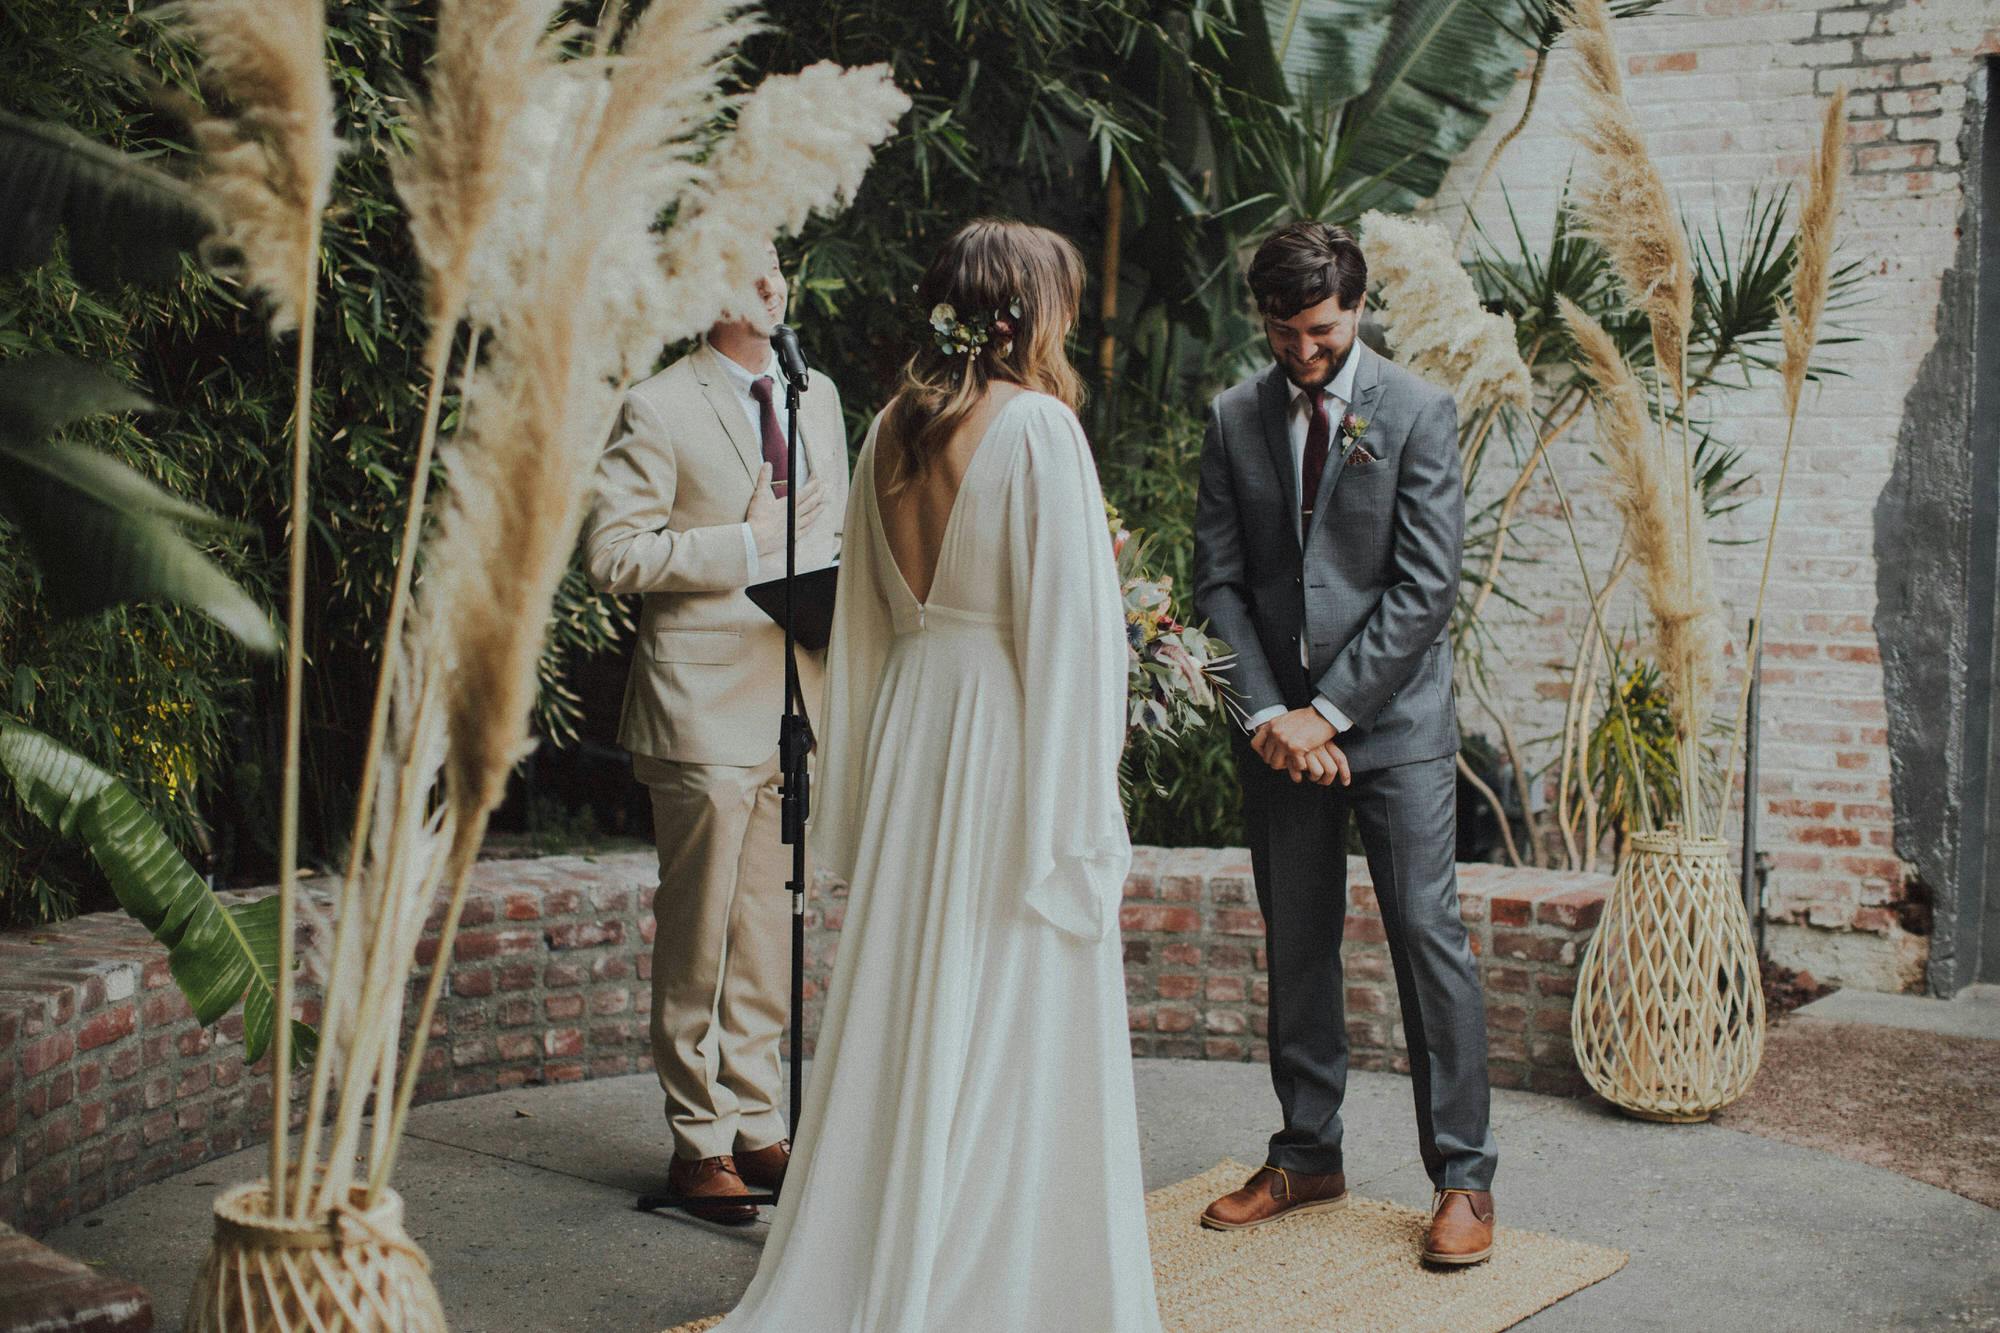 Pampus Grass wedding decor